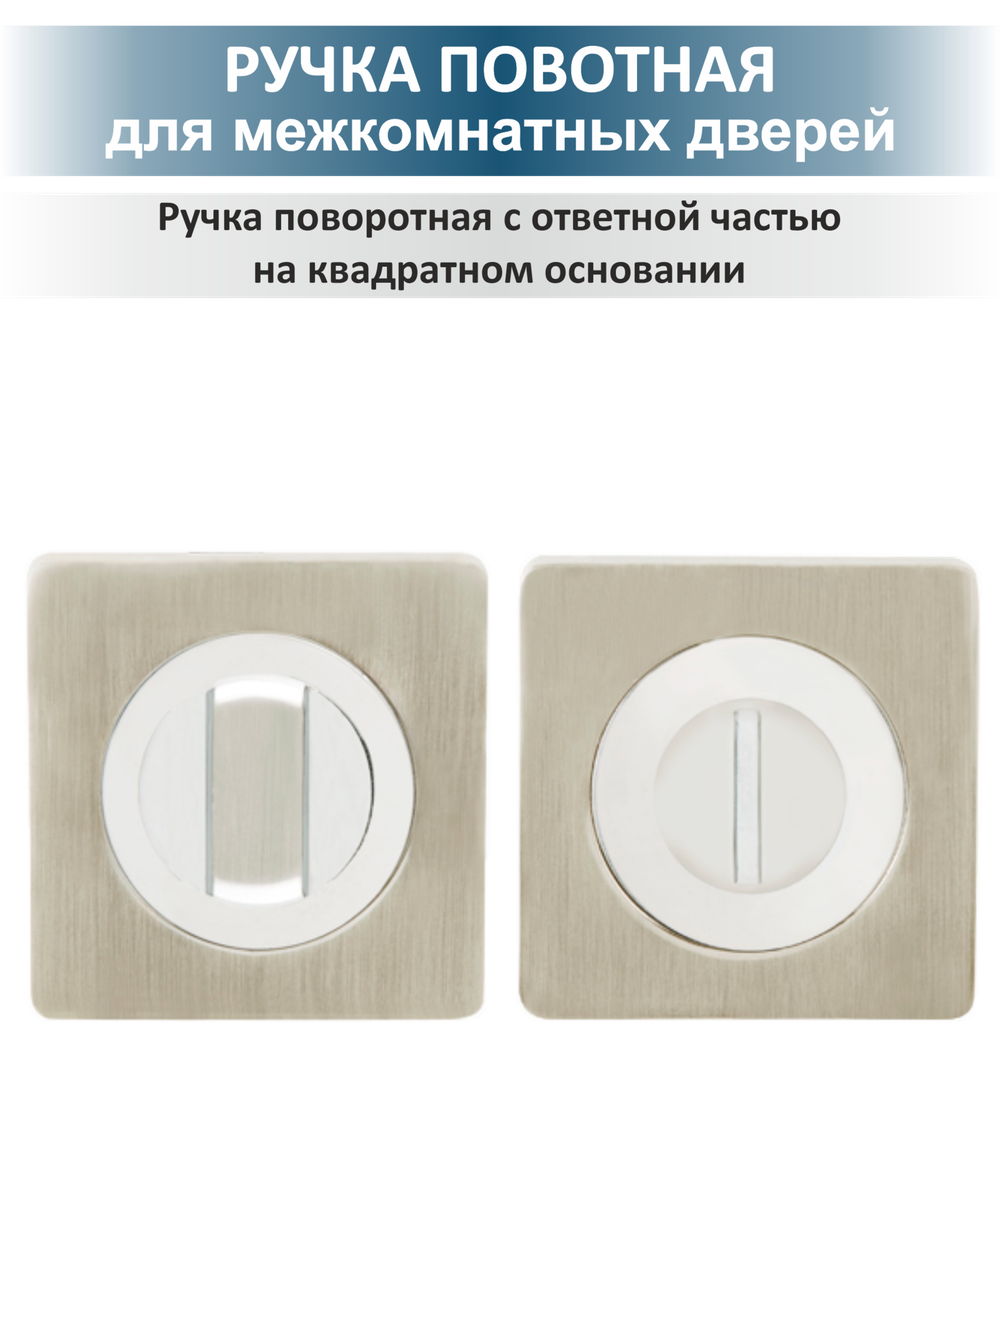 Комплект дверной фурнитуры для межкомнатной двери FUSION